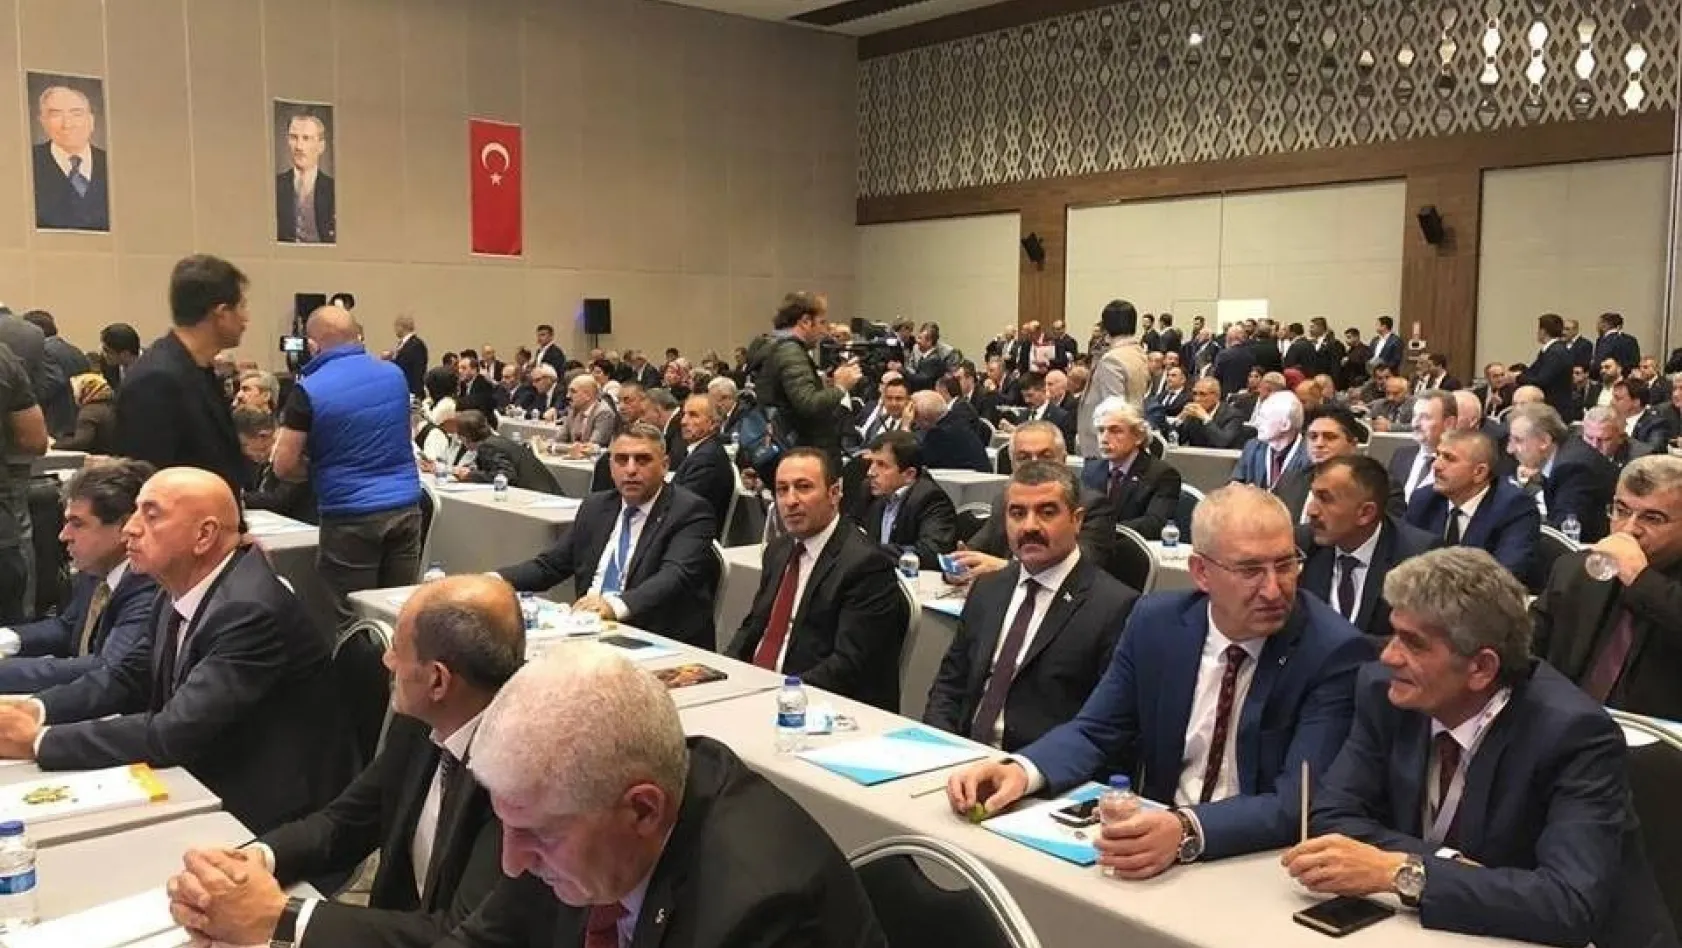 MHP Malatya İl Başkanı Bülent Avşar:
